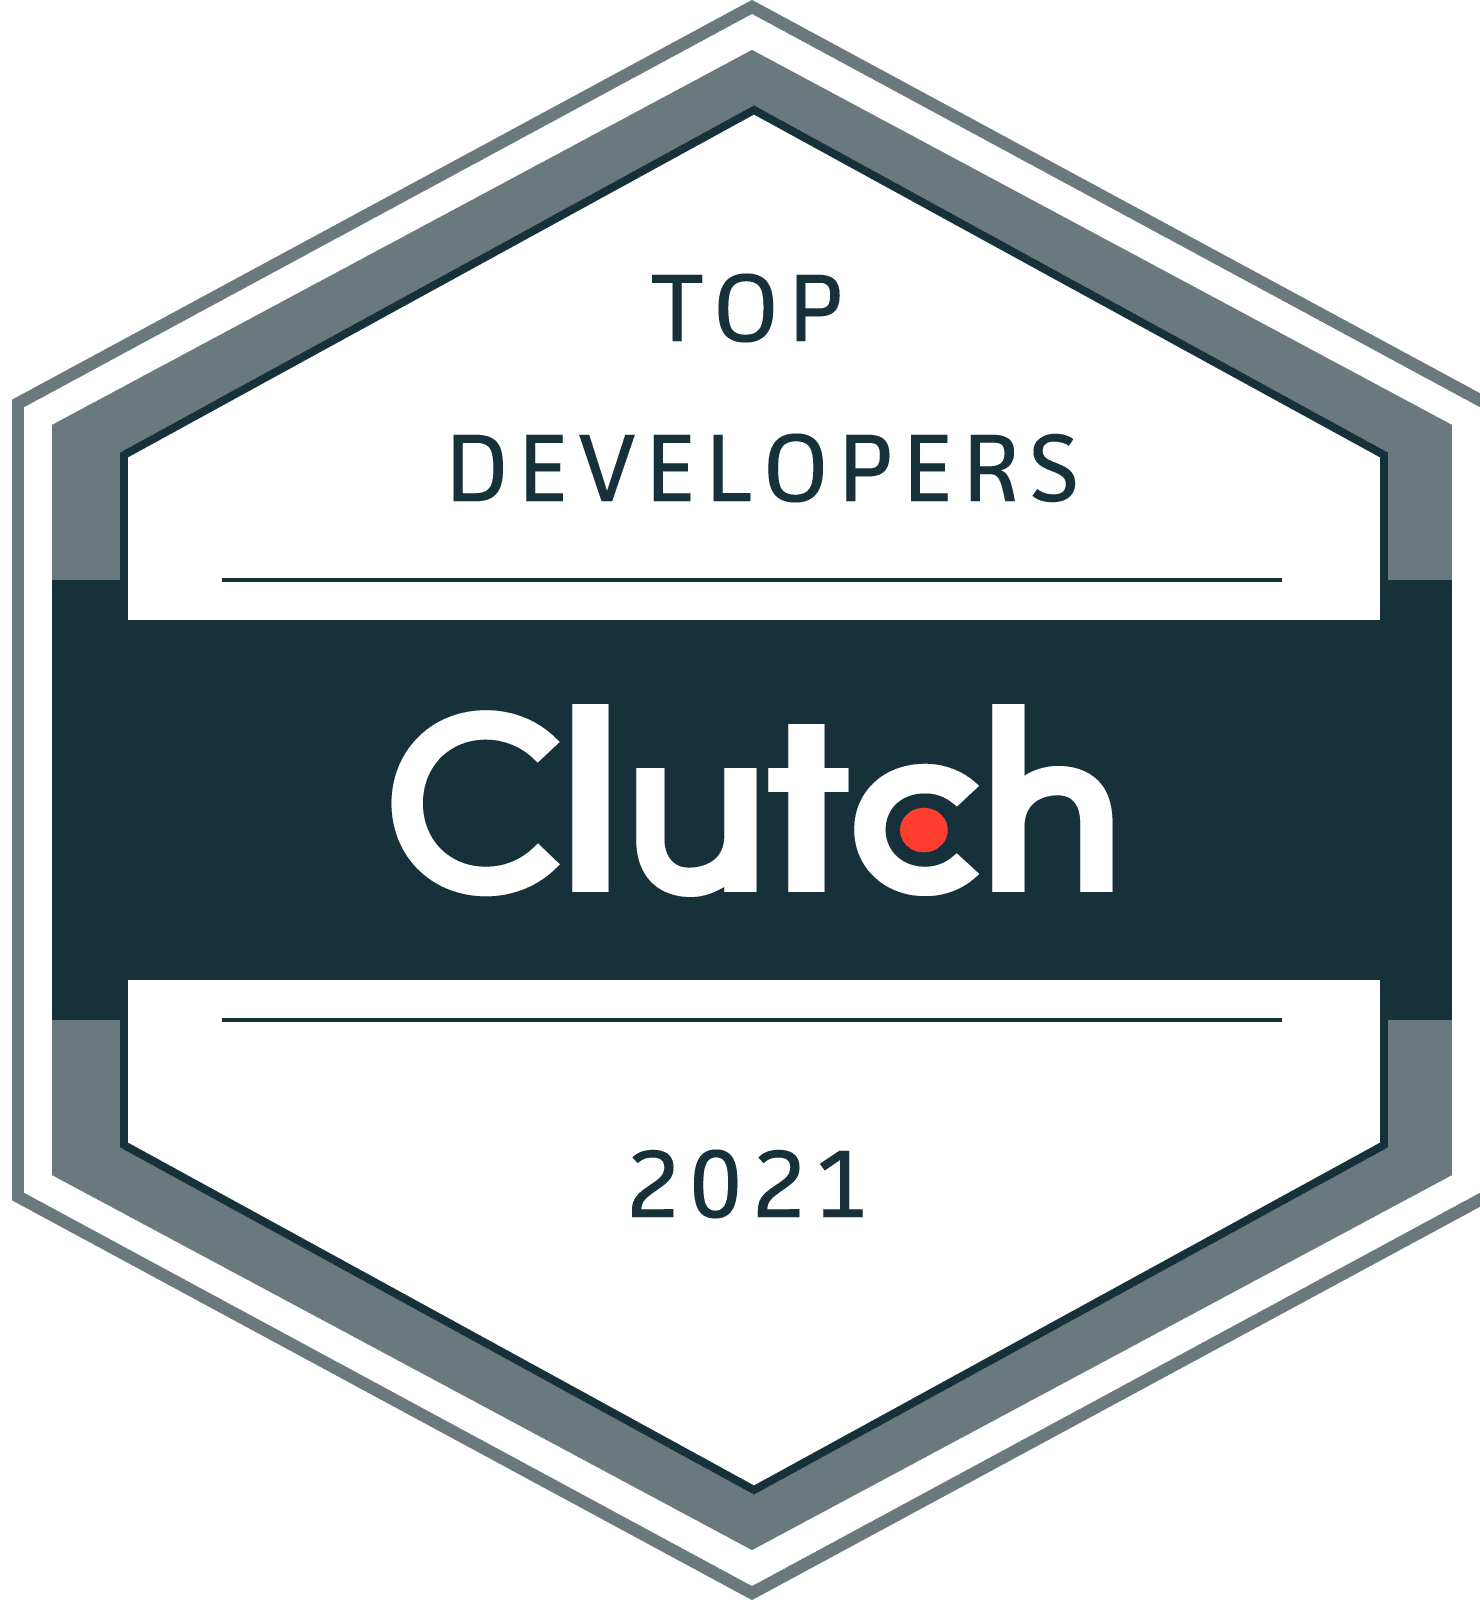 Top Developers Clutch 2021